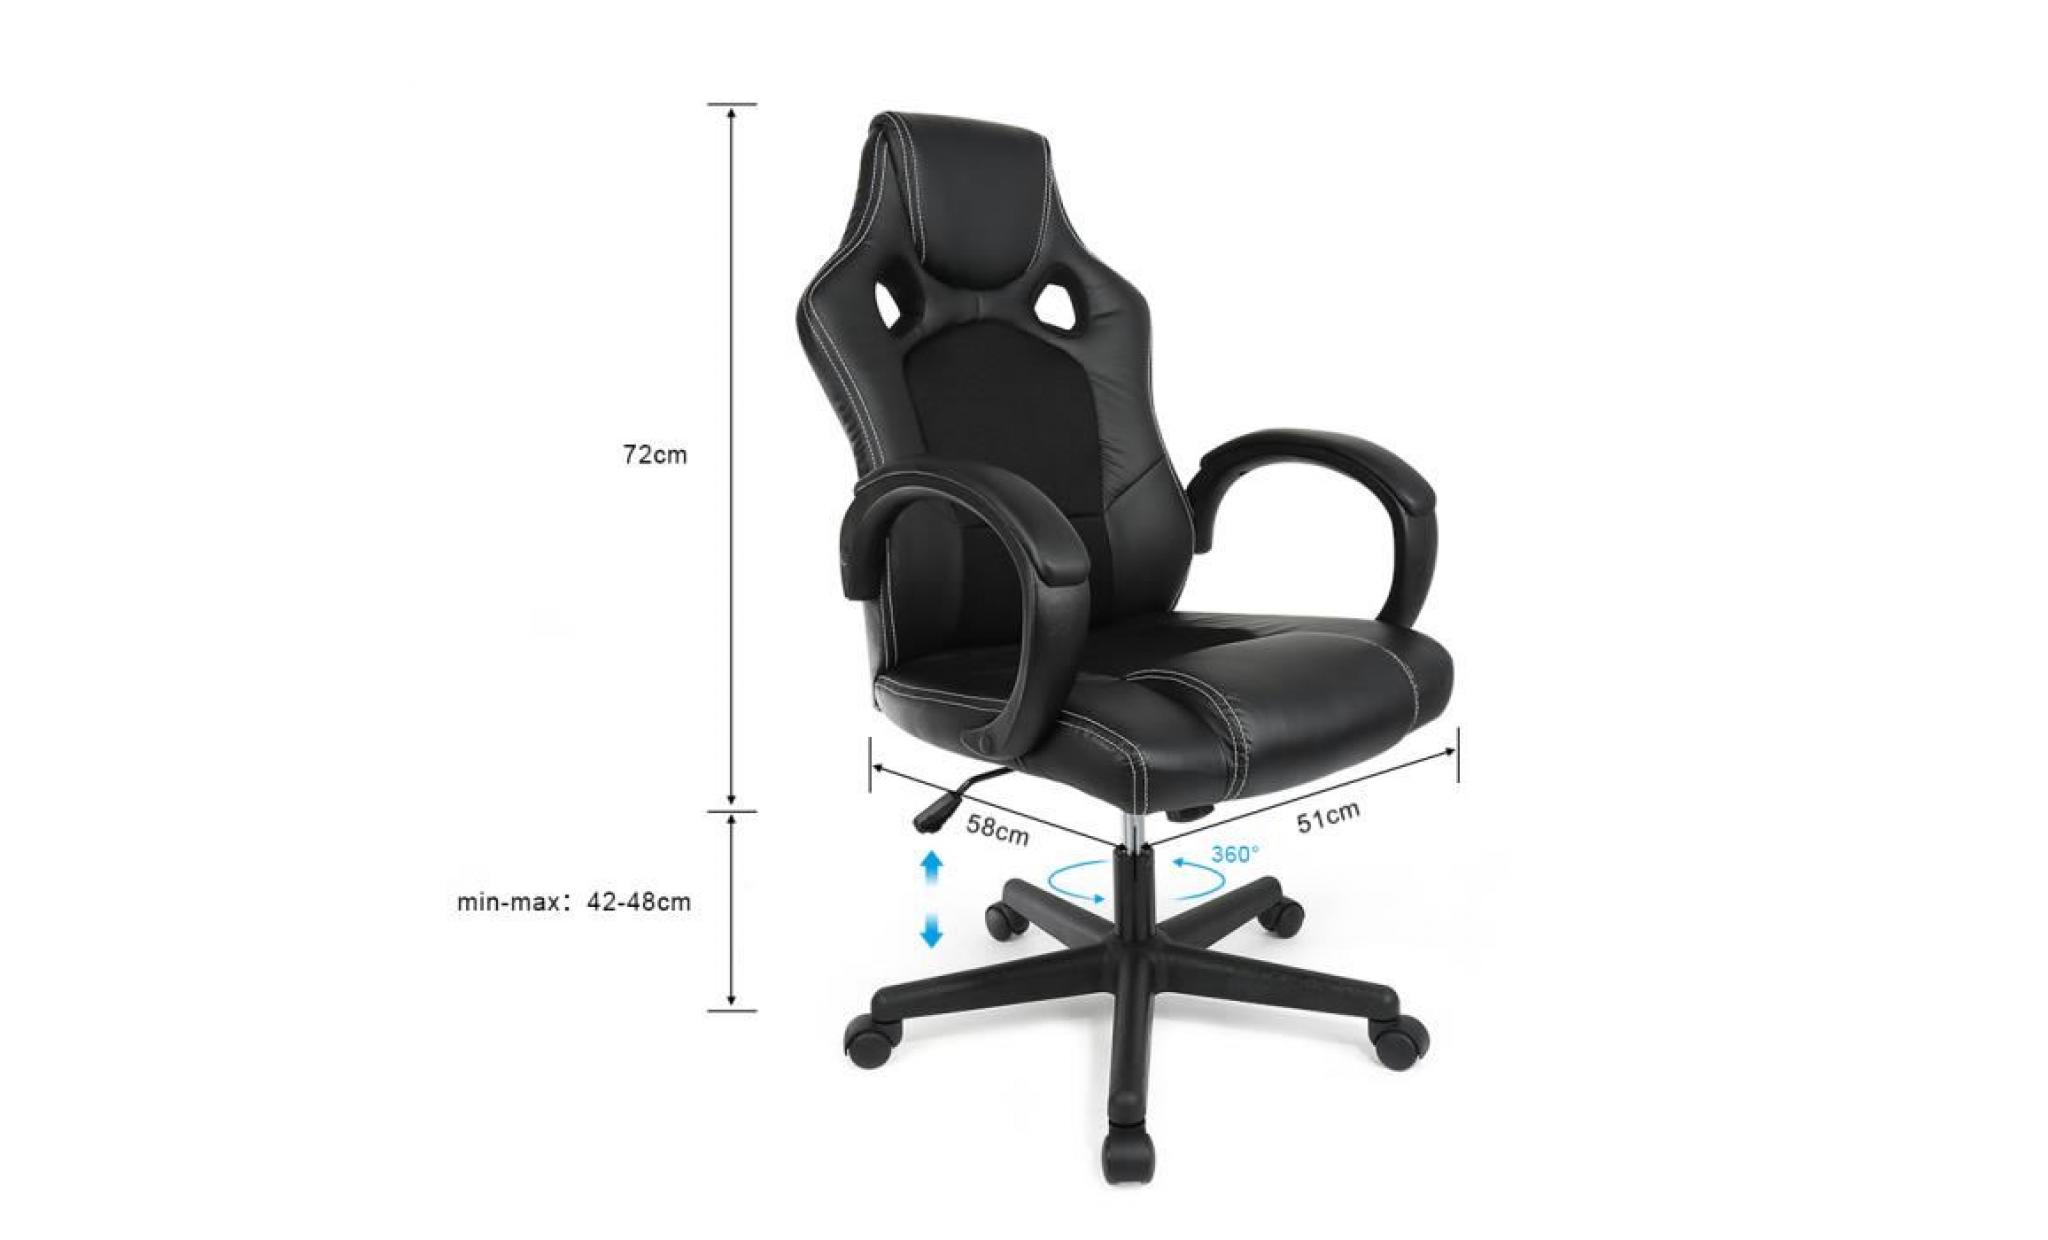 fauteuil de bureau chaise pour ordinateur pu 2 roulettes supplémentaires fournies noir pas cher